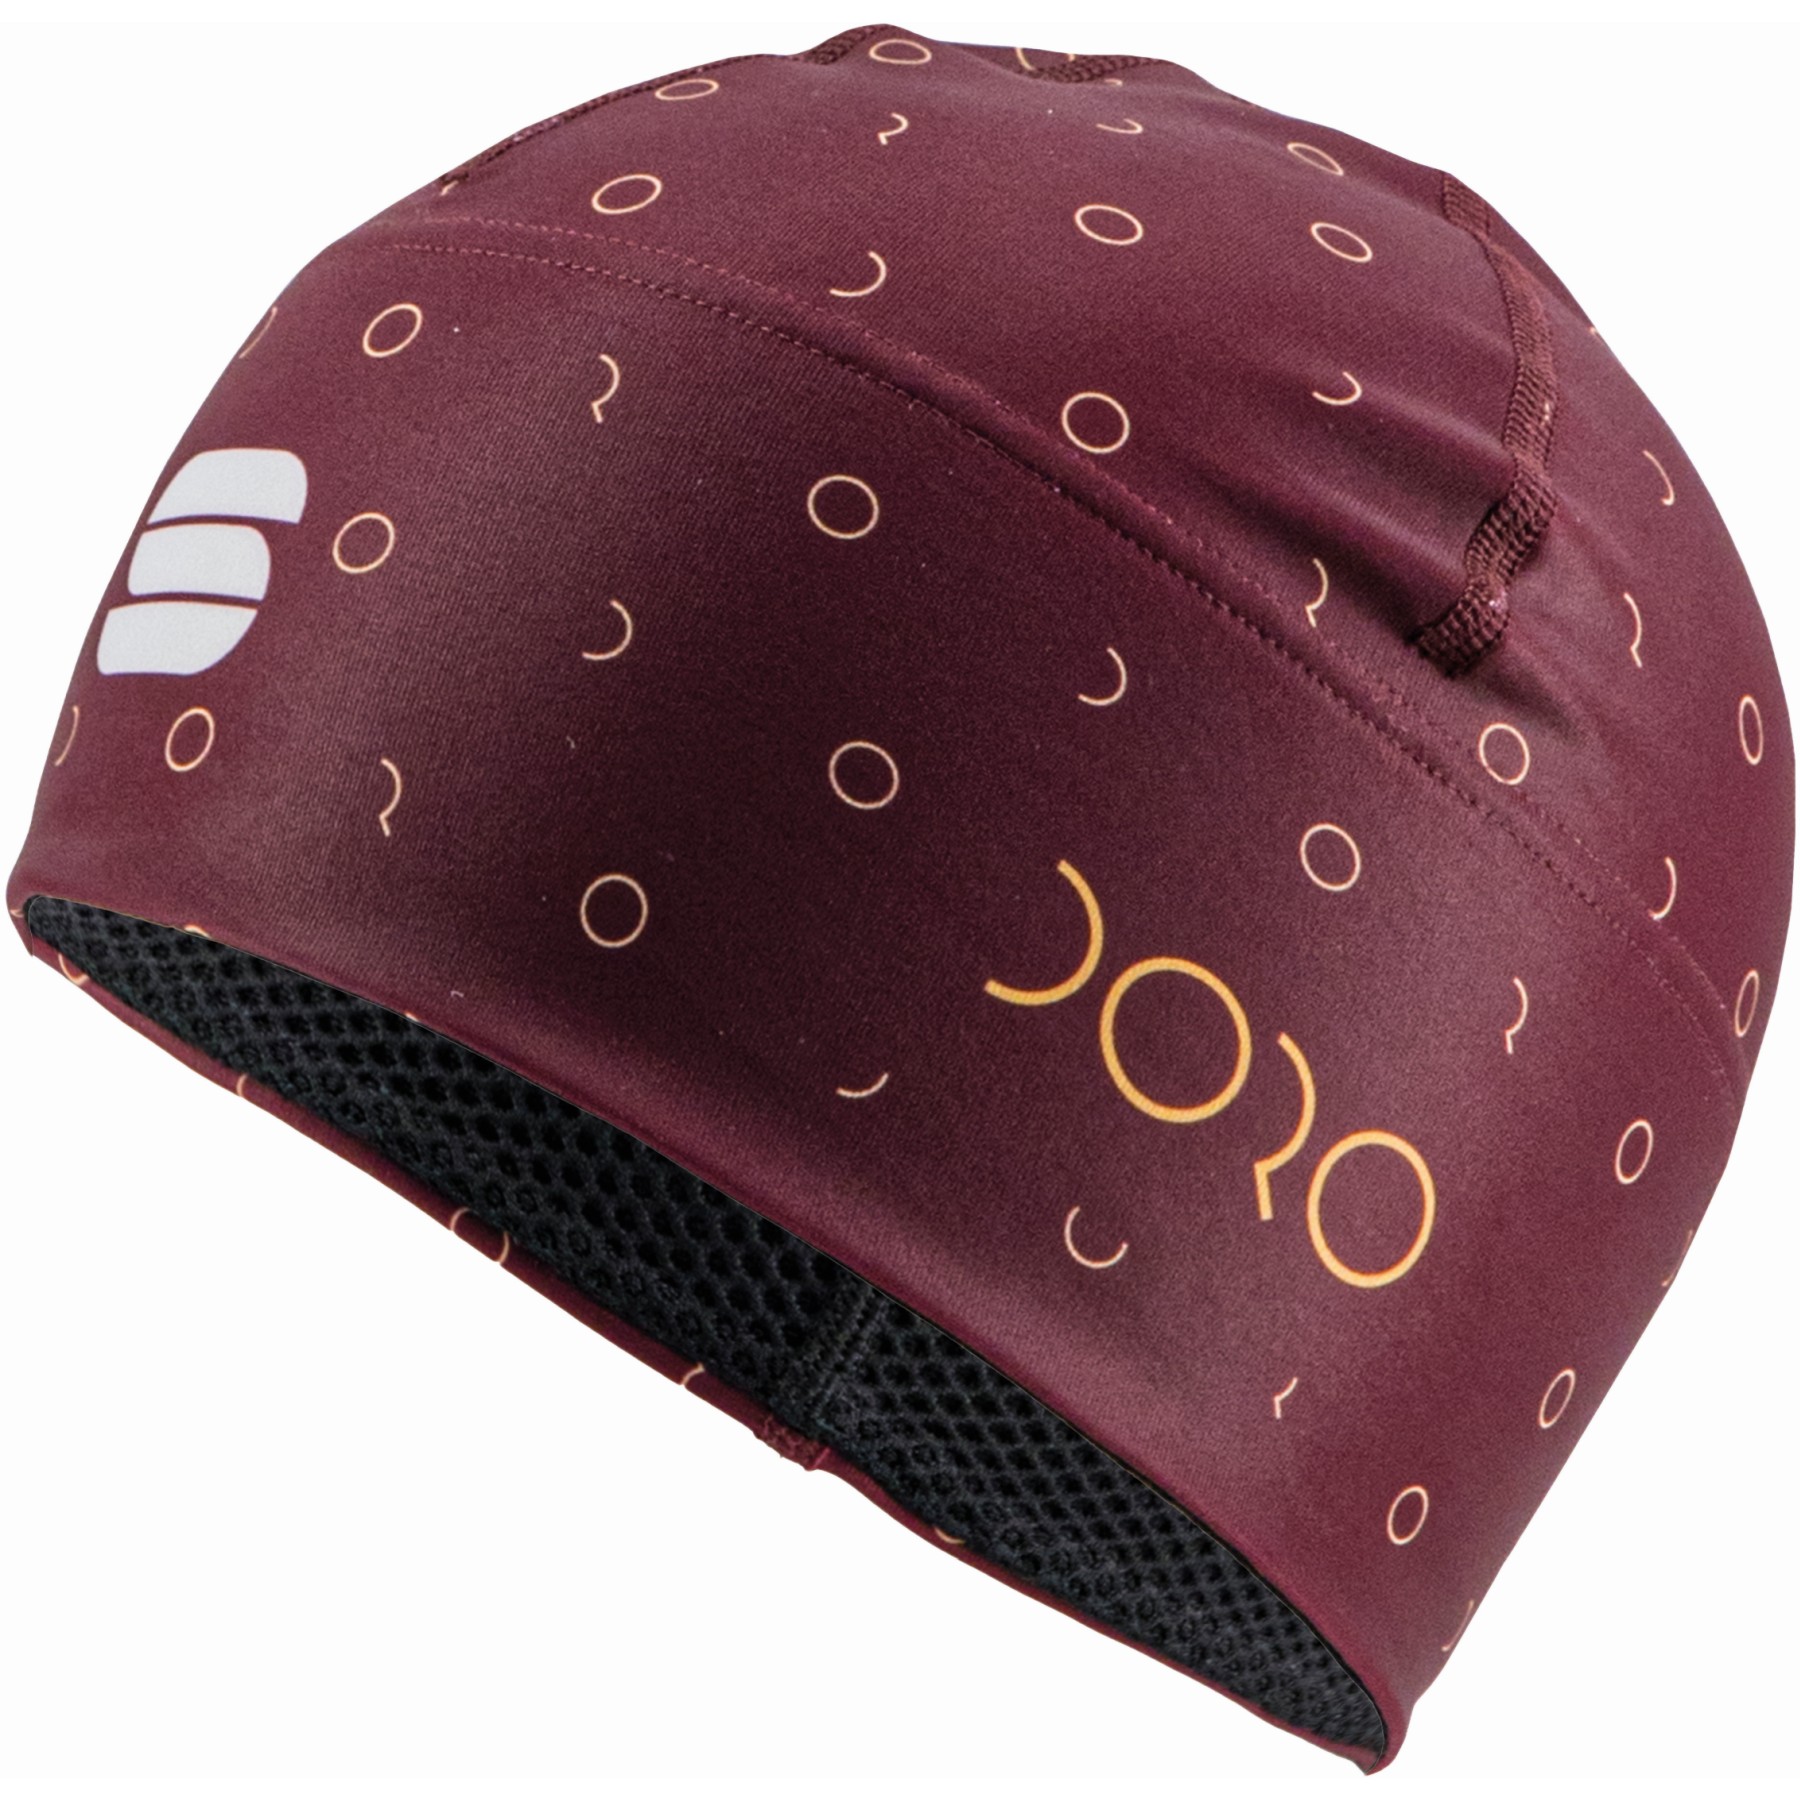 Produktbild von Sportful Doro Damen Mütze - 605 Red Wine